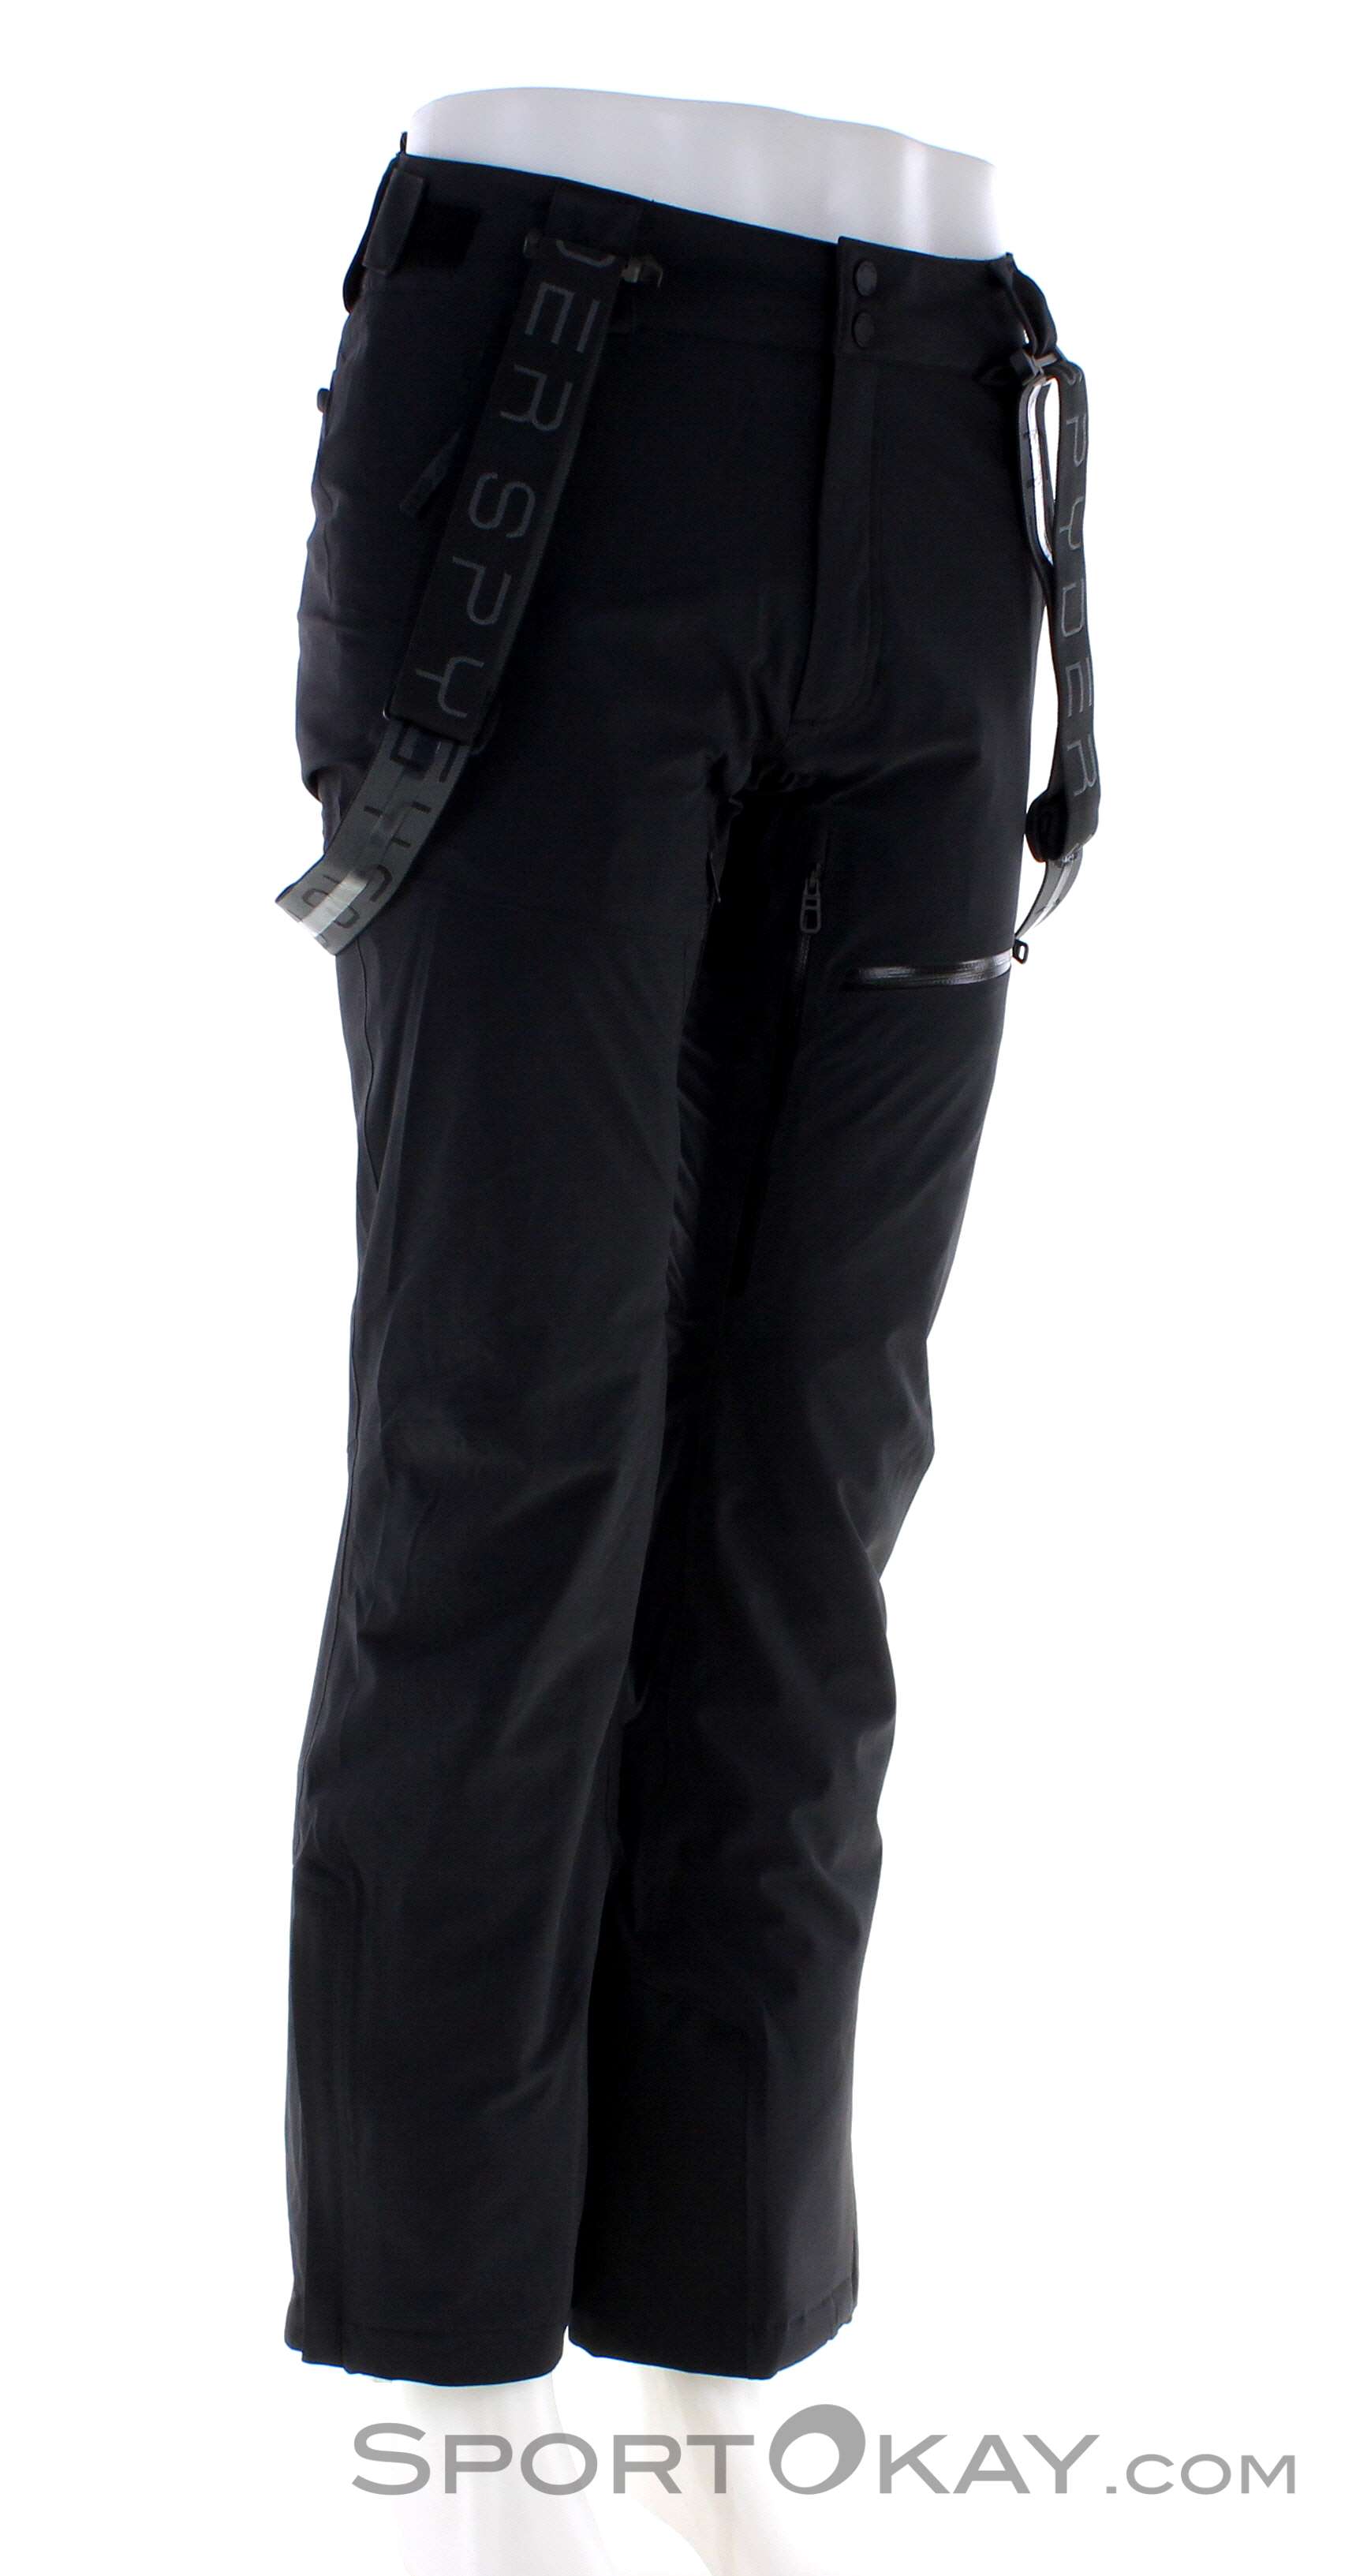 Spyder Dare Mens Ski Pants - Ski Pants - Ski Clothing - Ski